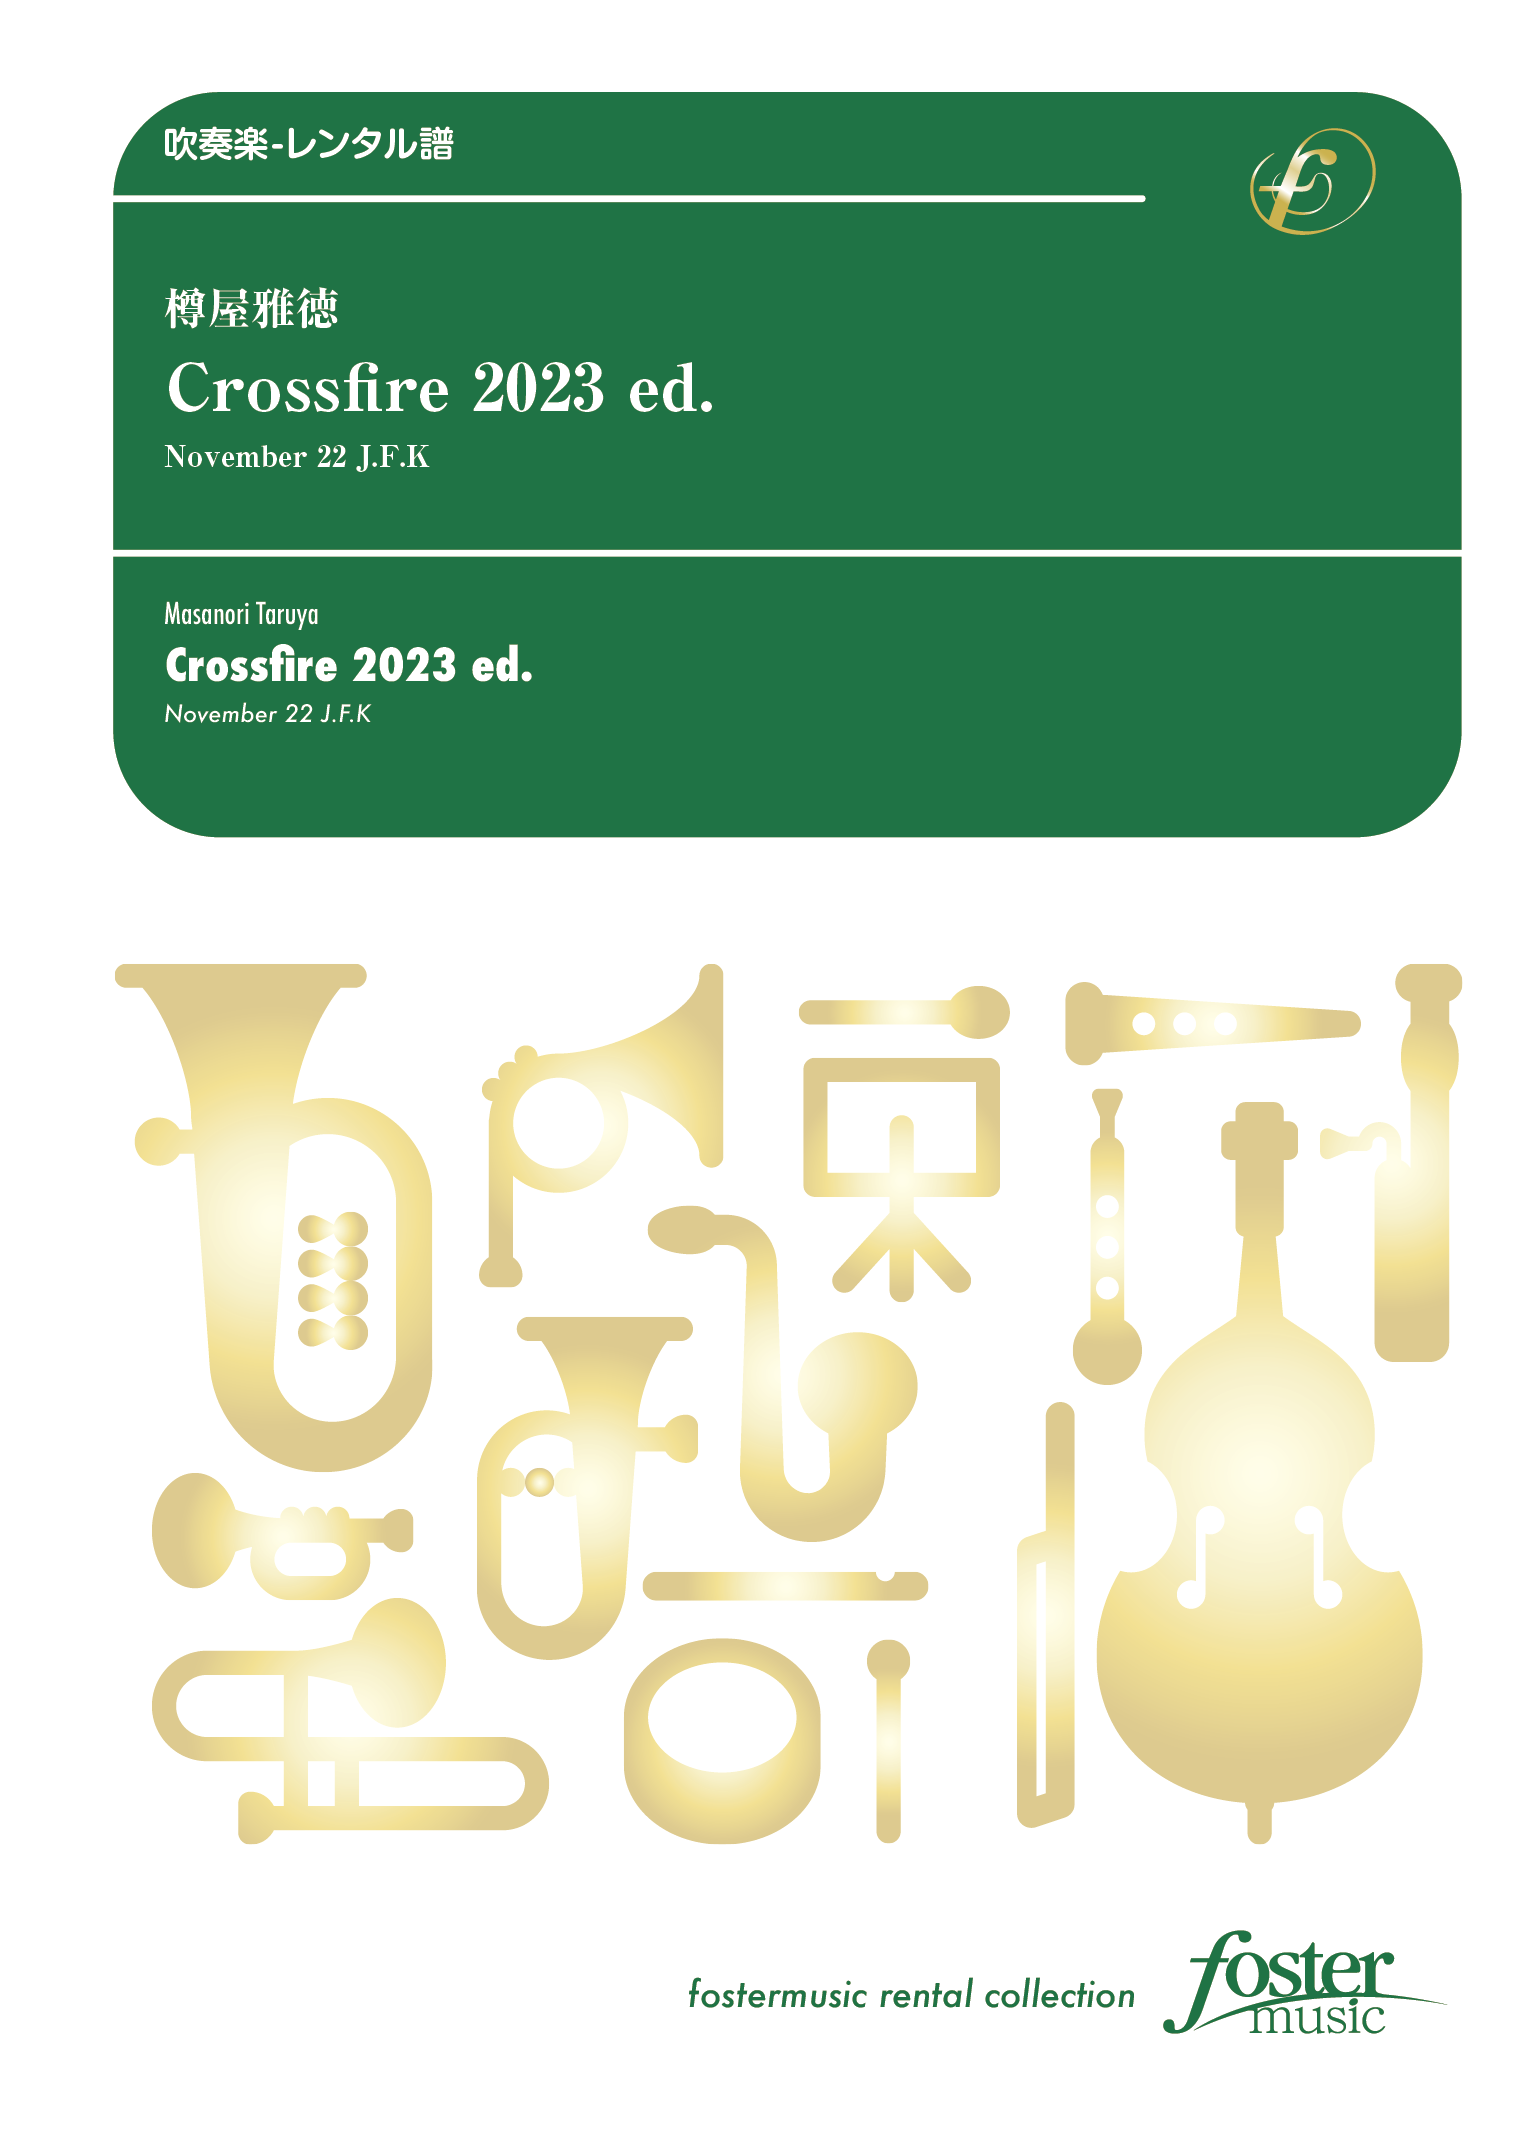 Crossfire 2023 ed. - November 22 J.F.K：樽屋雅徳 [吹奏楽大編成 